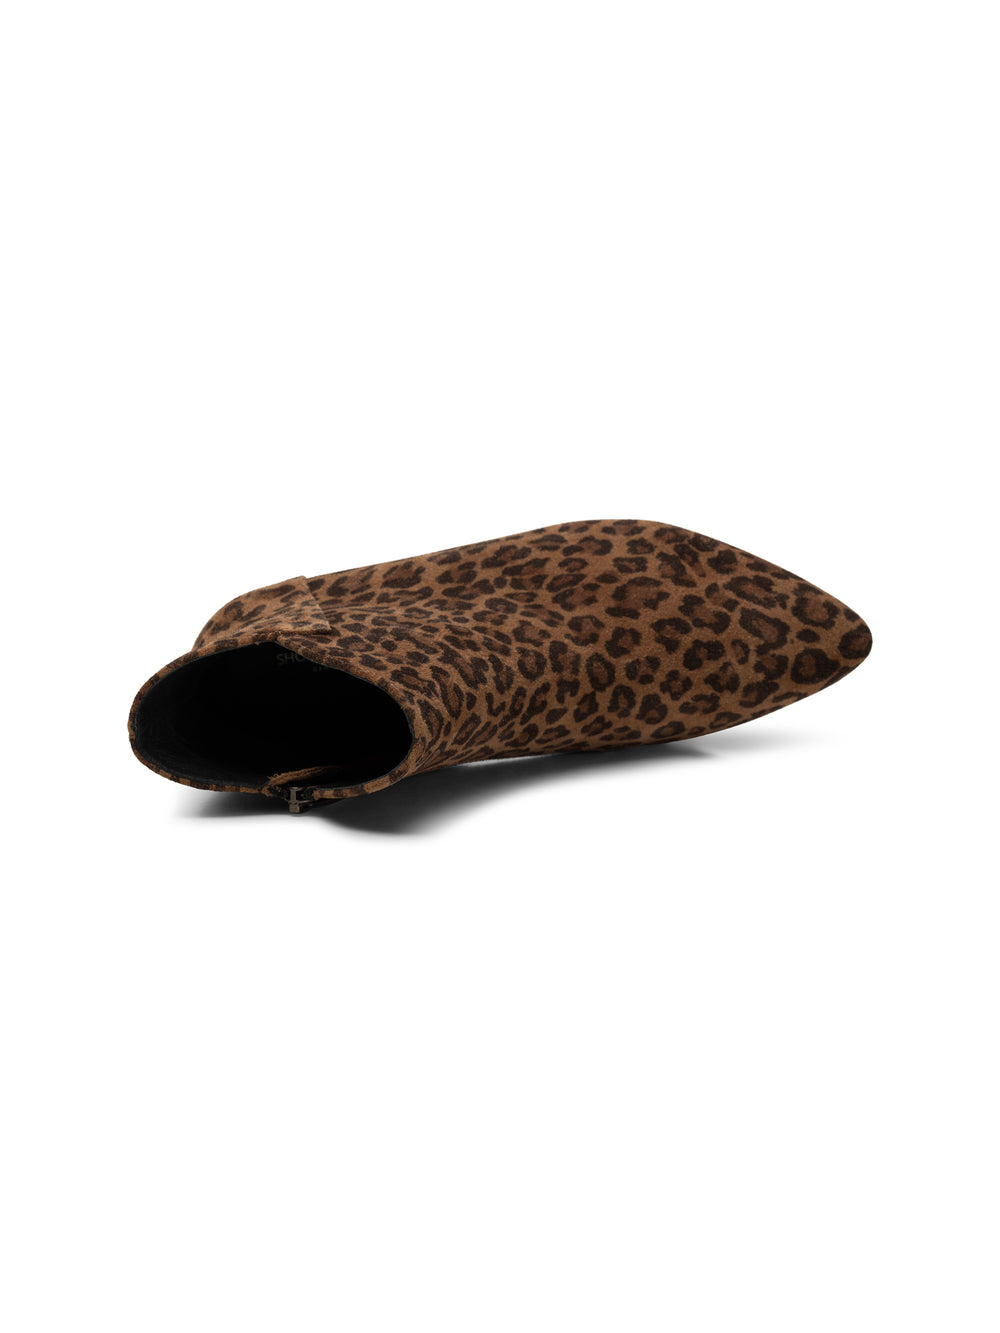 Shoe The Bear - Saga Ruskind Støvle i Leopard